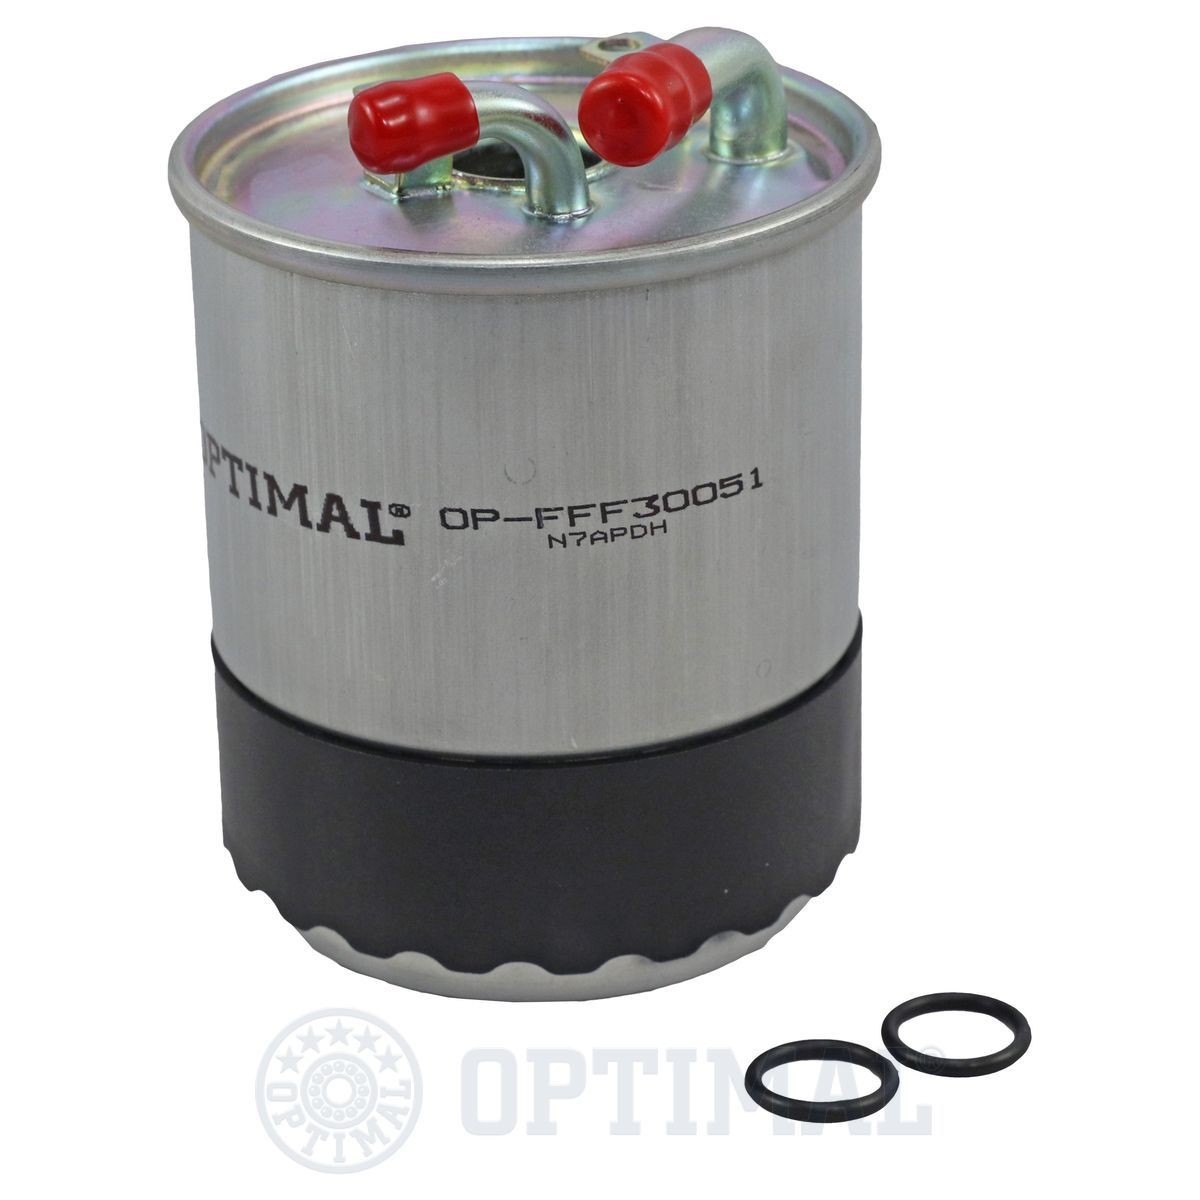 OPTIMAL OP-FFF30051 Fuel filter 642-092-05-01